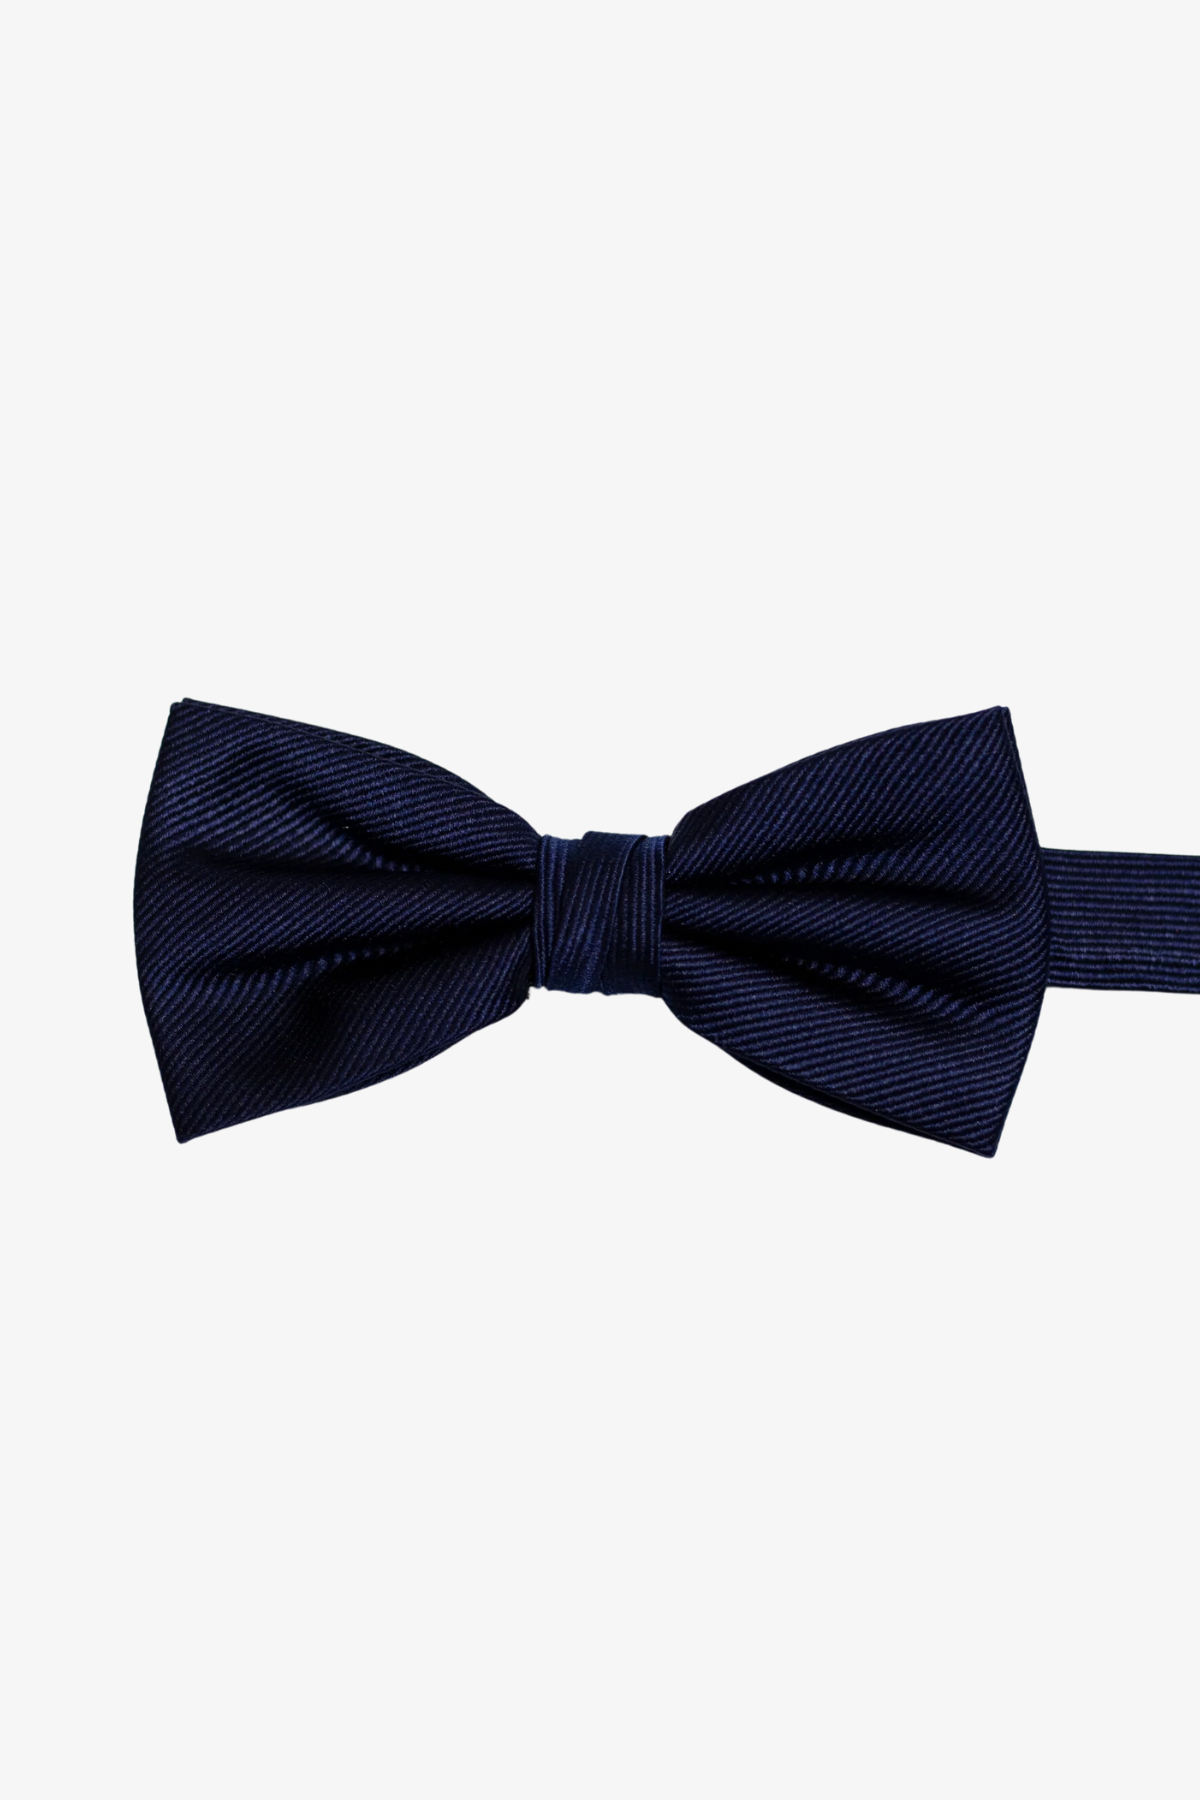 Bow tie - Navy